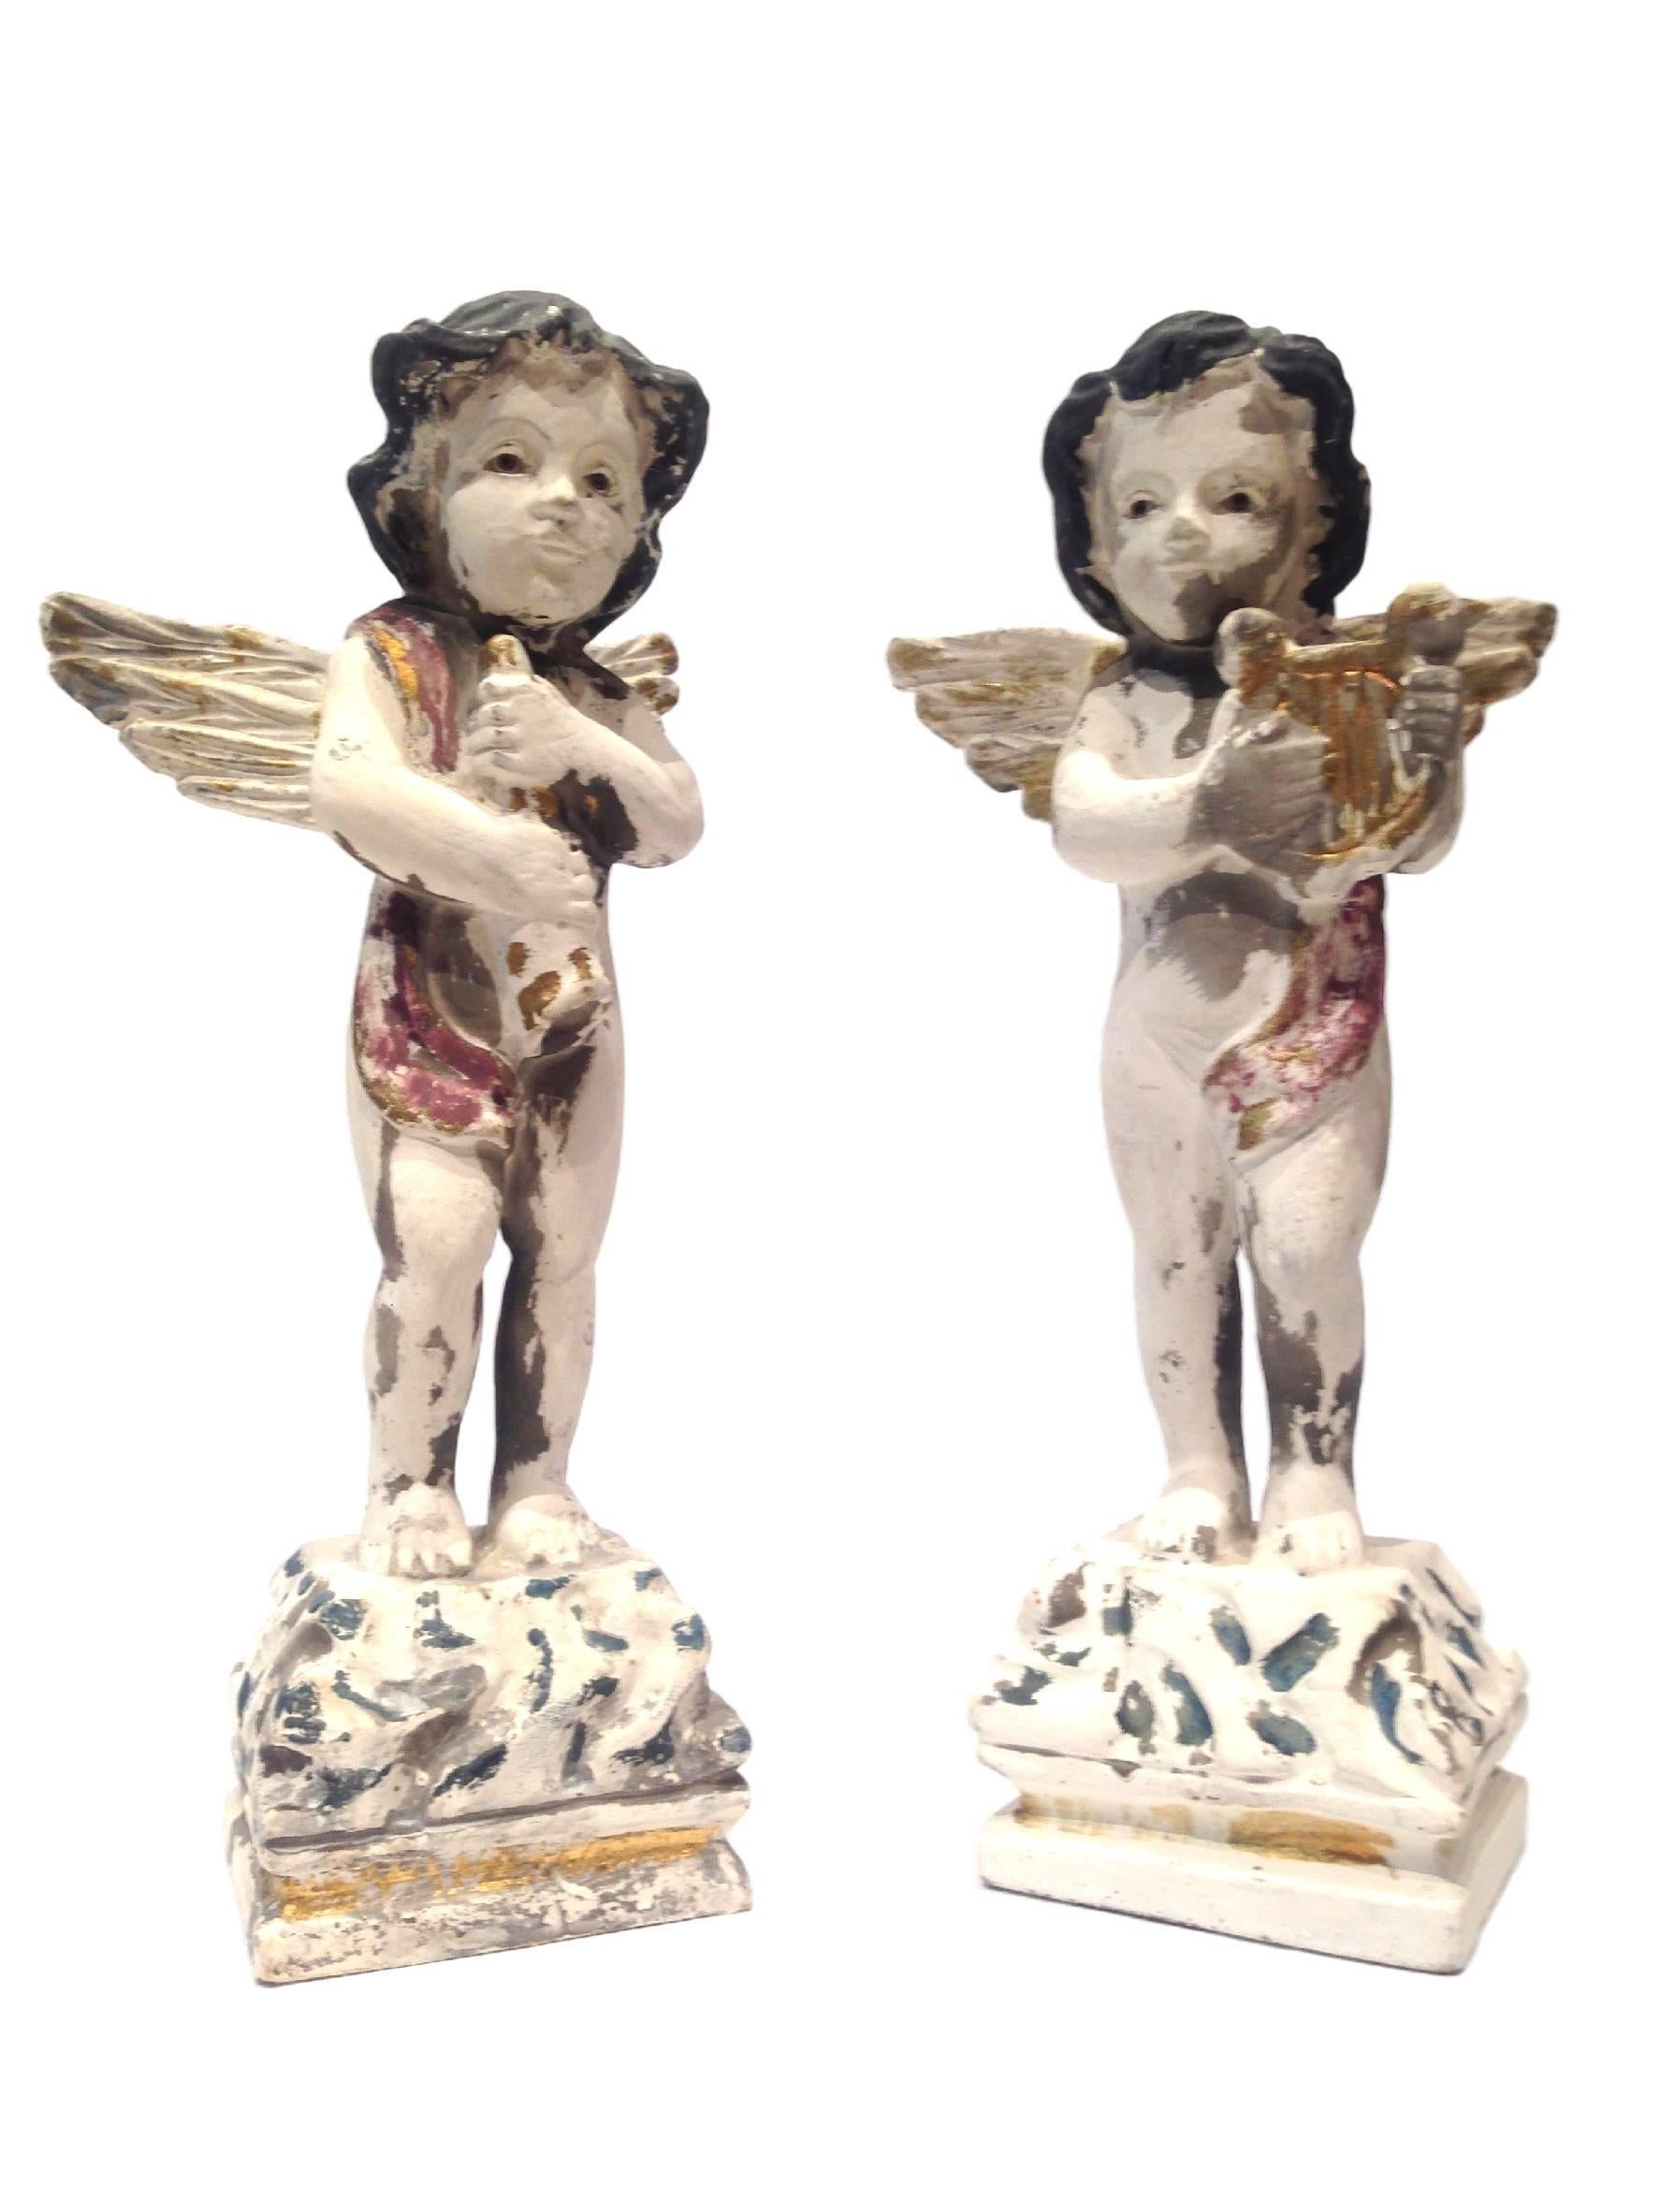 Wunderschönes Paar handbemalter musikalischer Cherub-Statuen.
Maße: 10